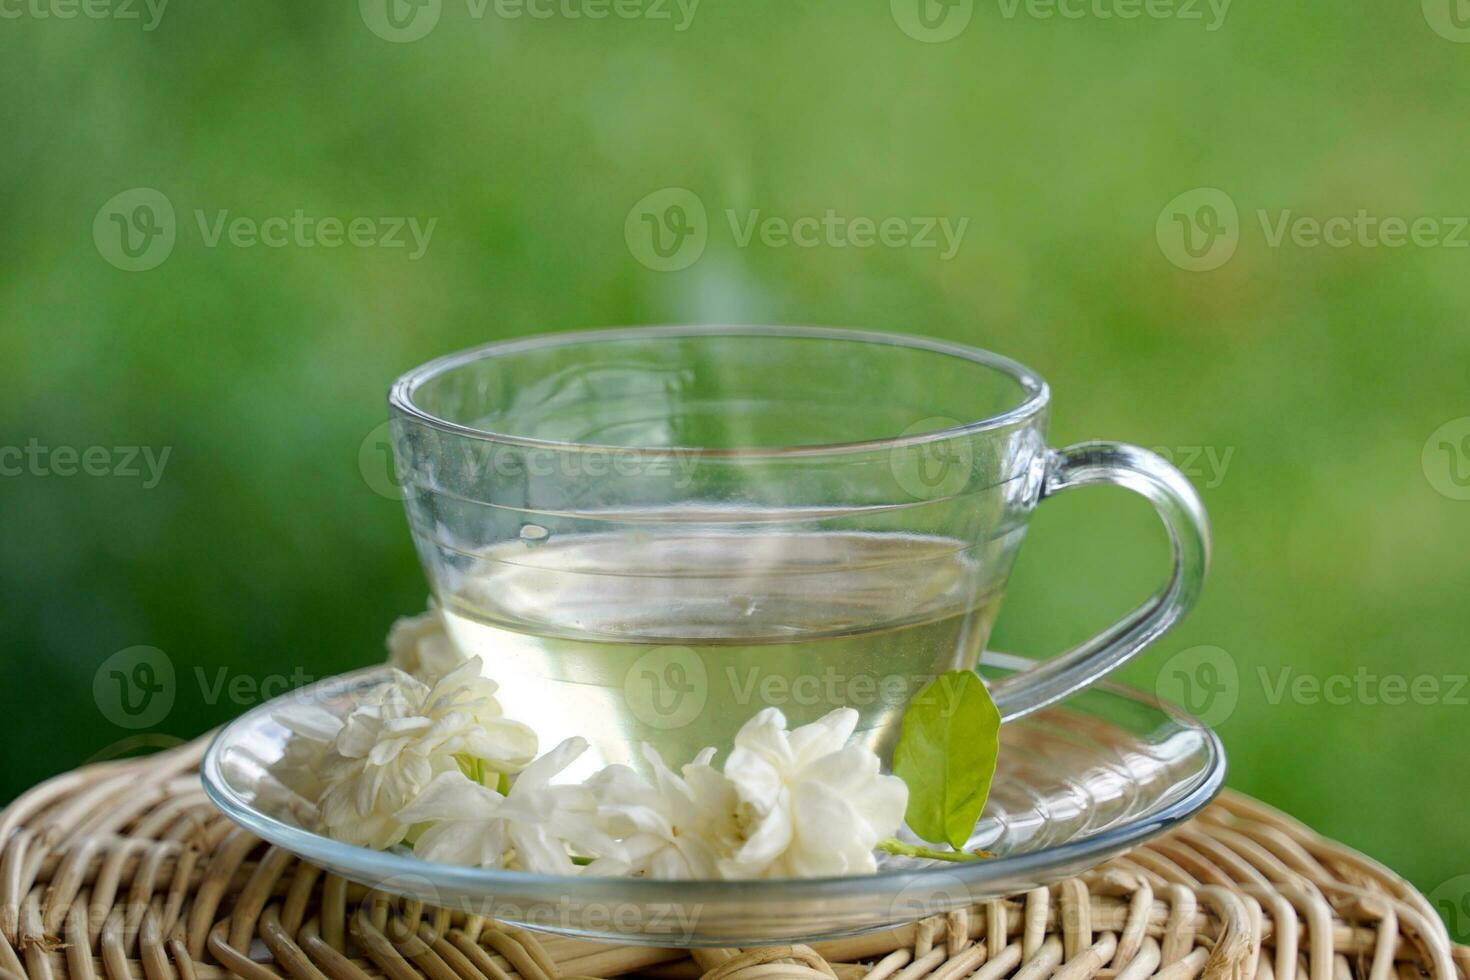 jasmin thé et jasmin vert thé il est une thé recette cette les usages pur jasmin fleurs. et une mélange de jasmin fleurs et vert thé à améliorer le arôme boisson et bien pour santé photo